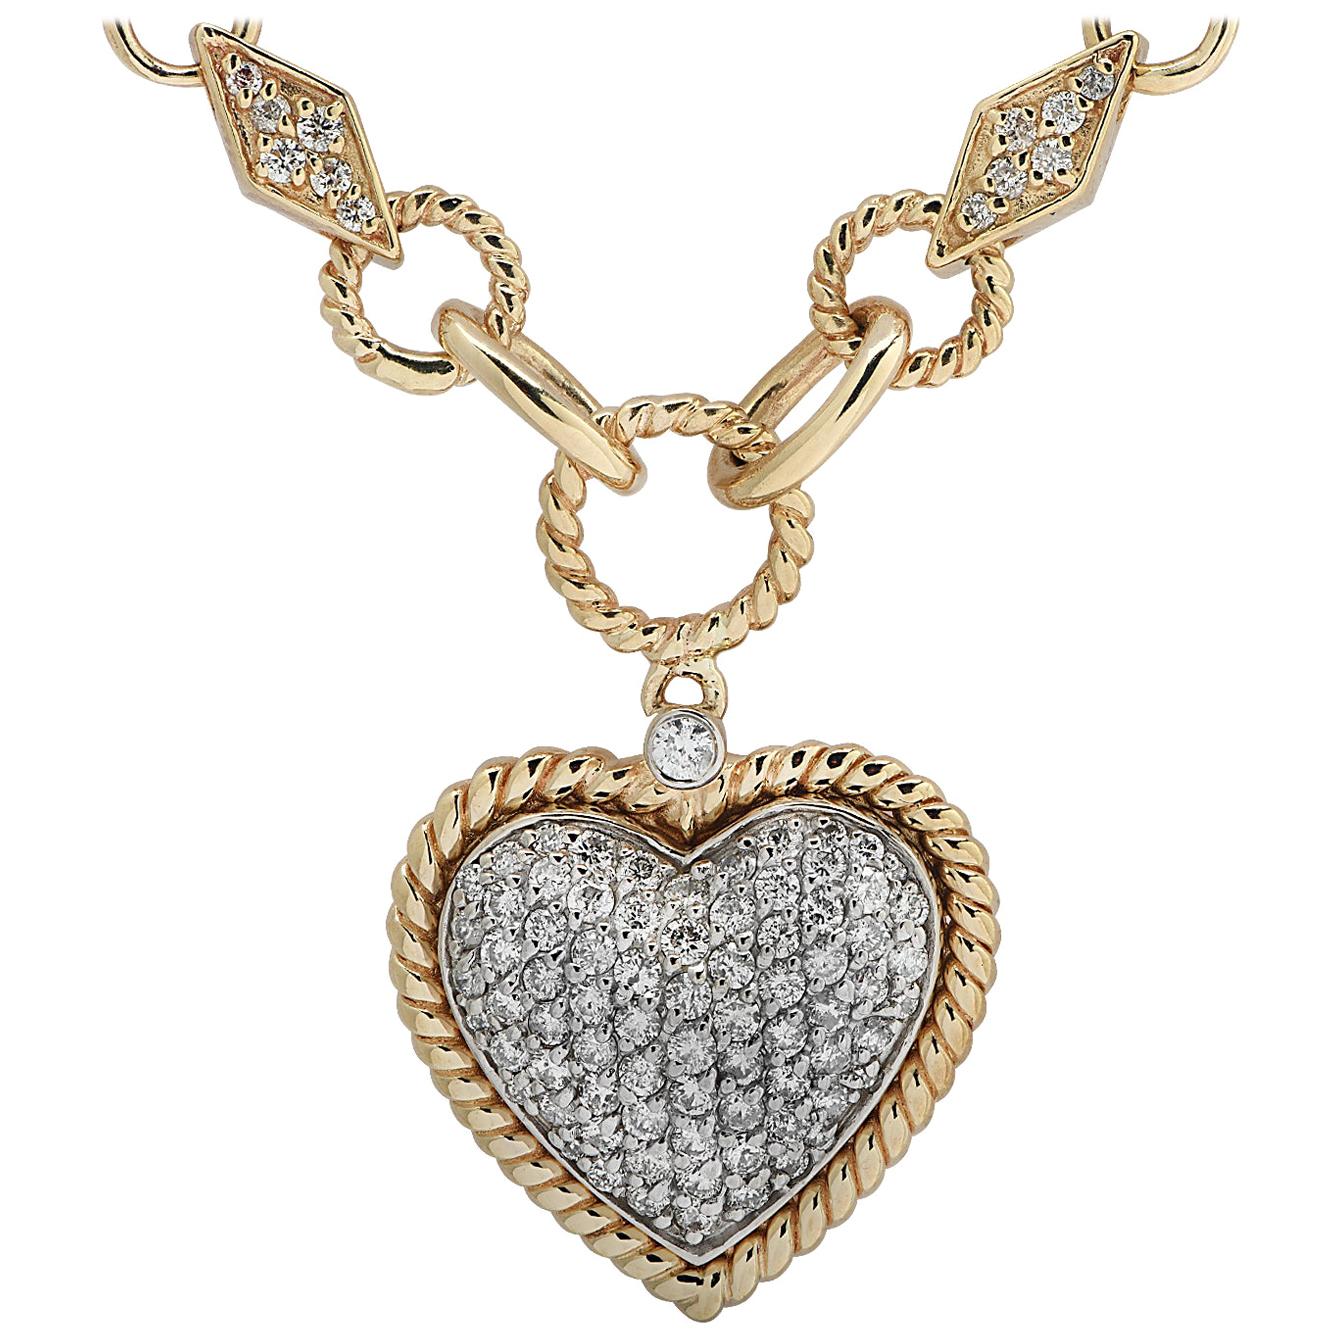 1.3 Carat Diamond Heart Necklace